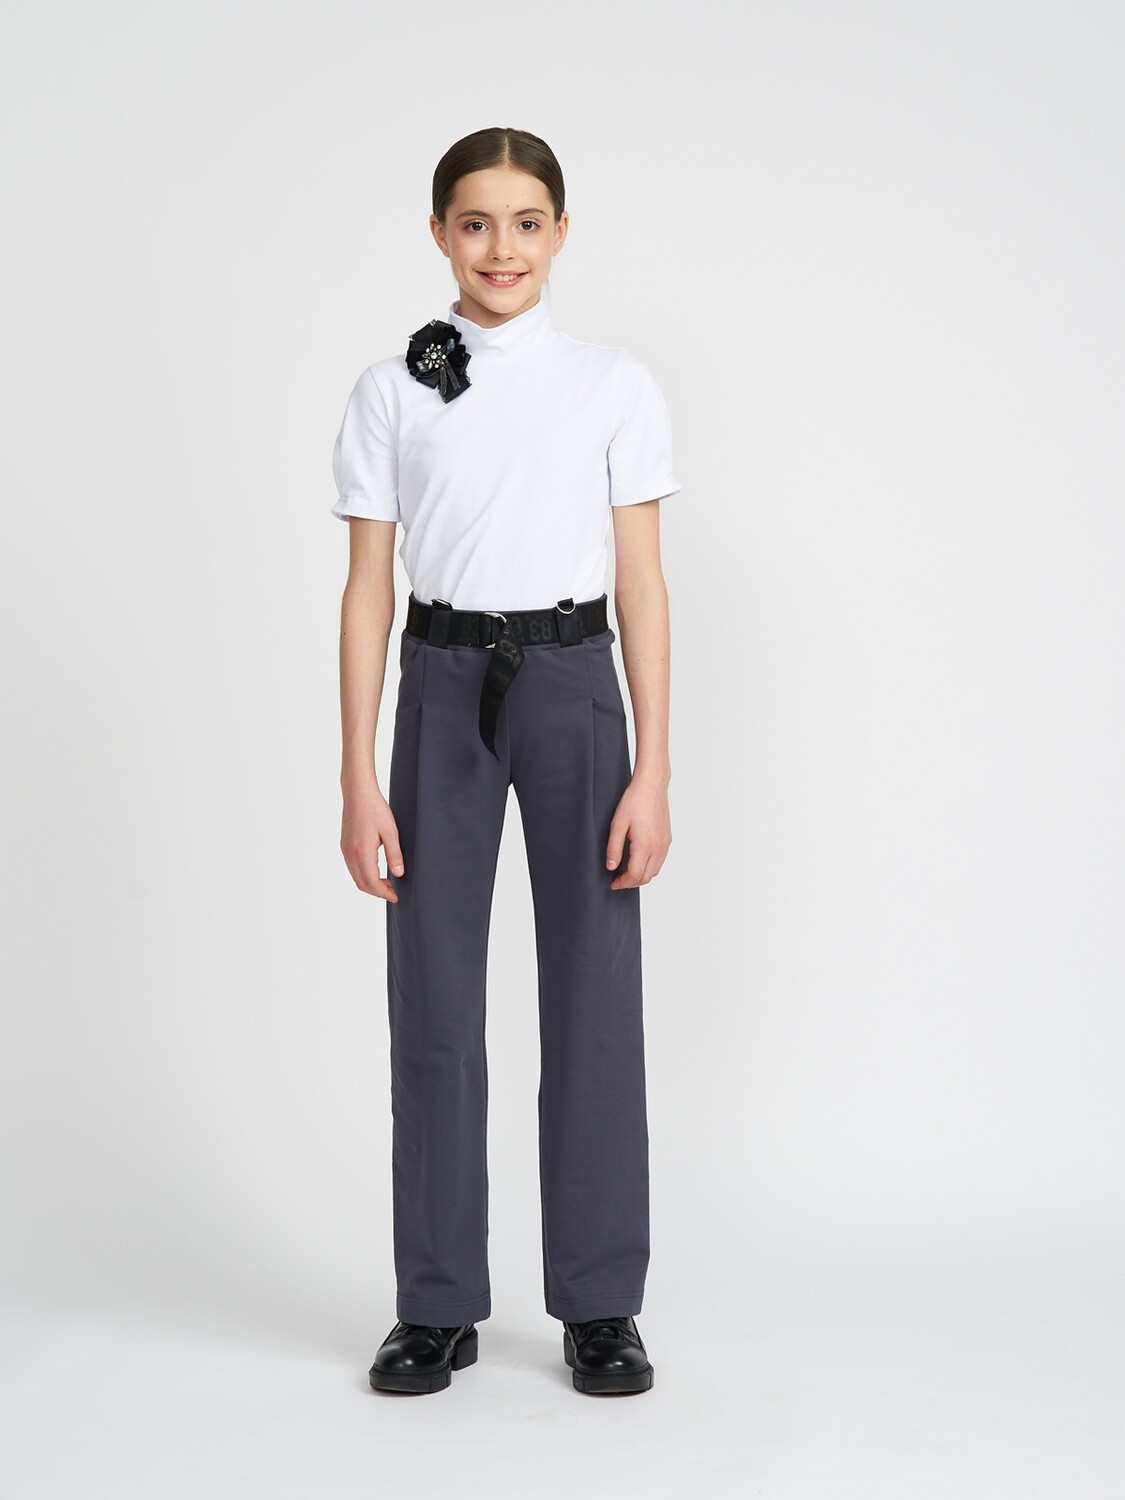 Стильные брюки IRMI для девочек и девушек